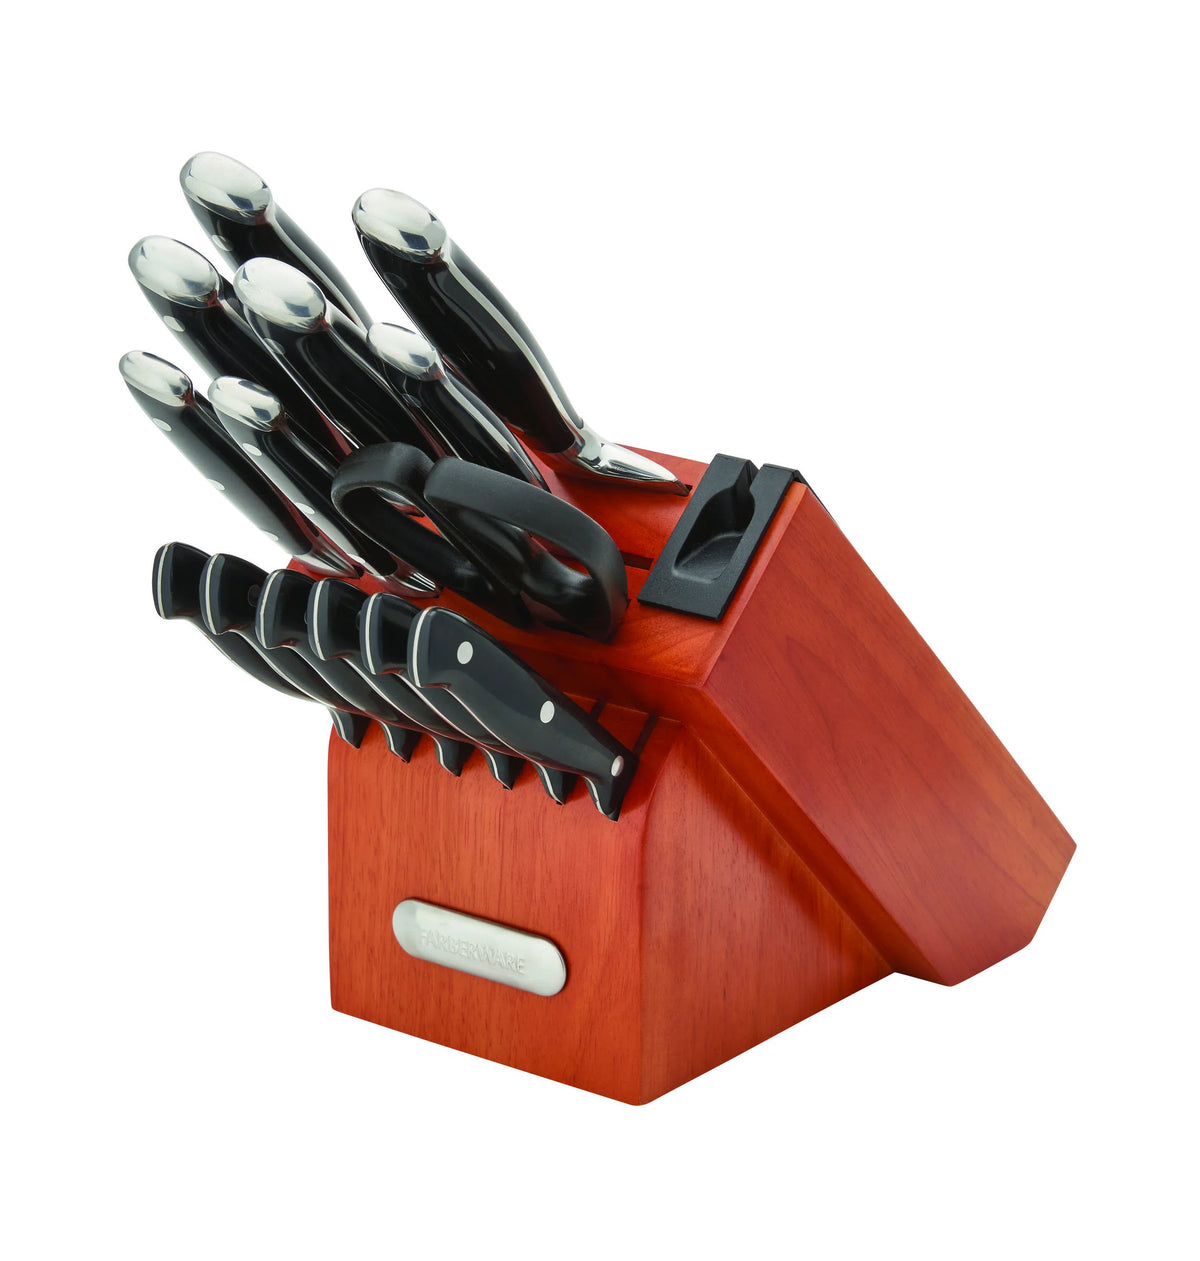 Farberware bloque cuchillos acero inox 15 piezas Edgekeeper Pro